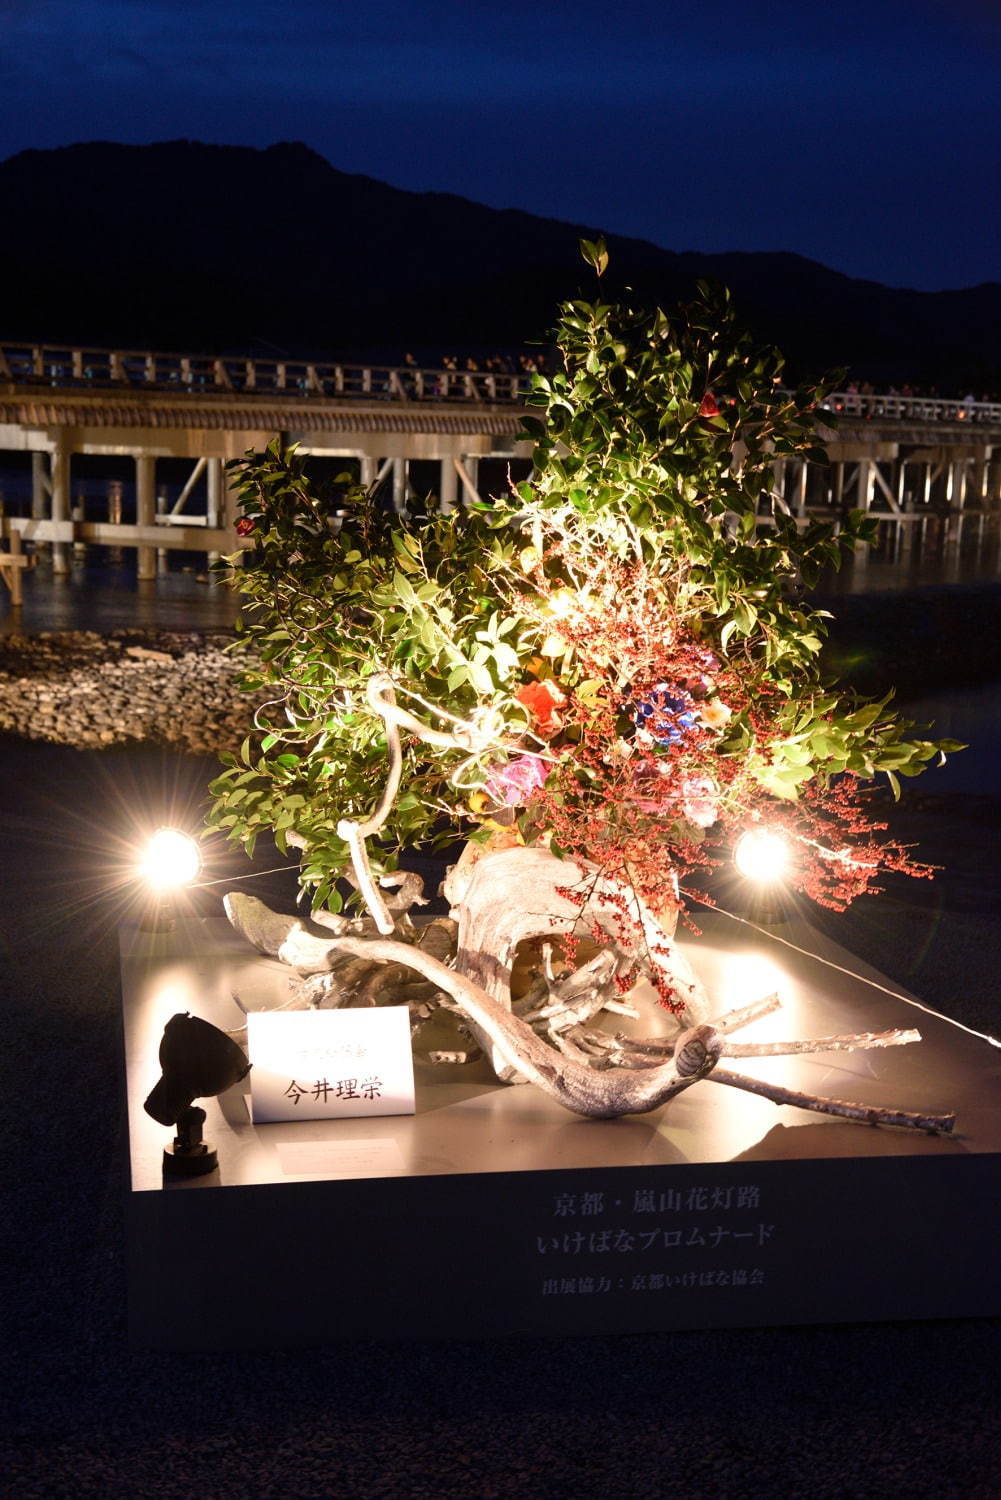 京都 嵐山花灯路 渡月橋ライトアップや情緒あふれる散策路 灯りと花の路 ファッションプレス